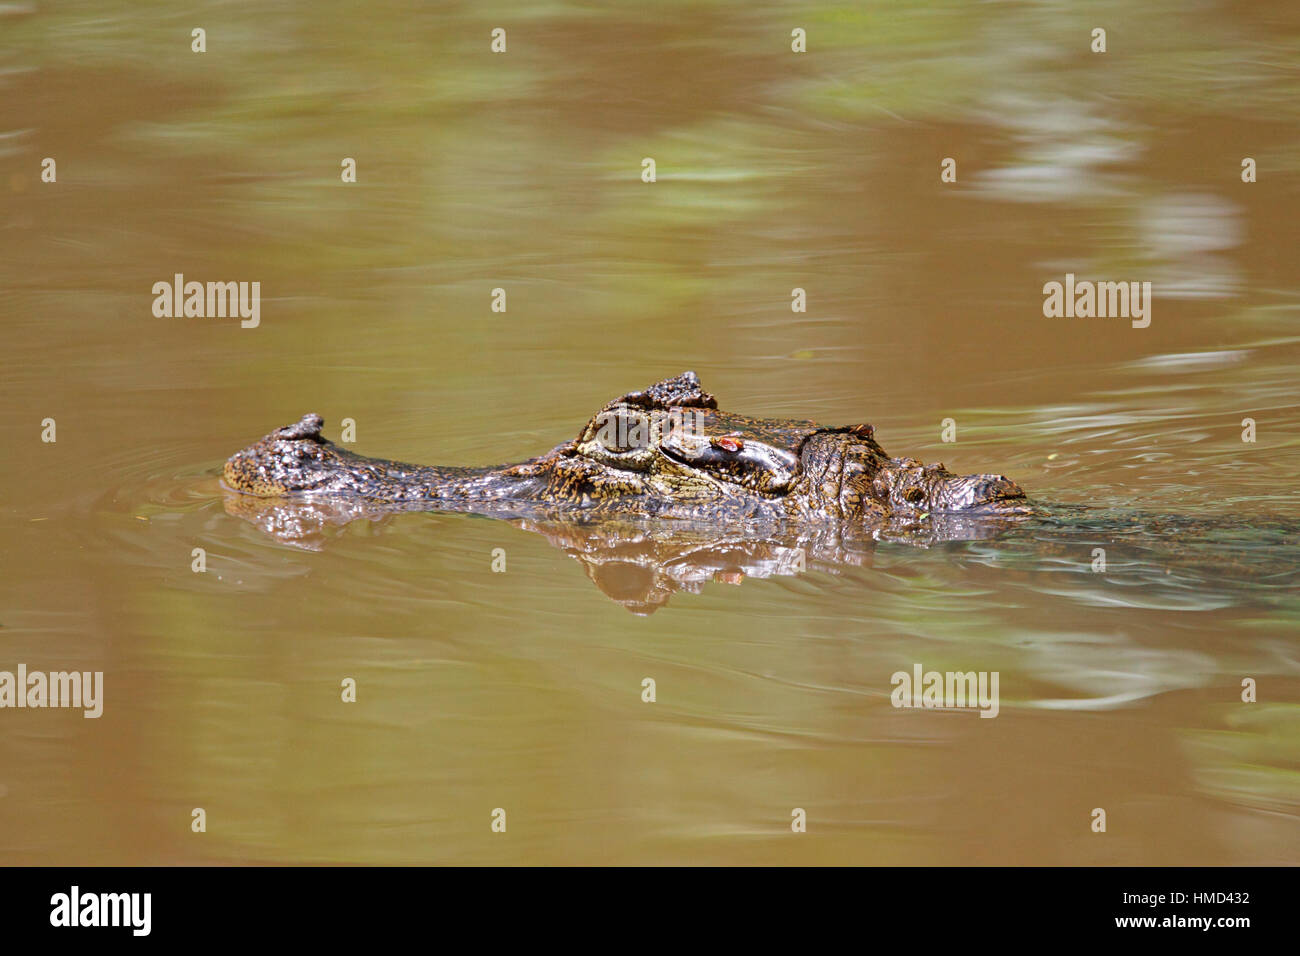 Caïman à lunettes (Caiman crocodilus) baignade dans la forêt tropicale naturelle canal, Parc National de Tortuguero, Costa Rica. Banque D'Images